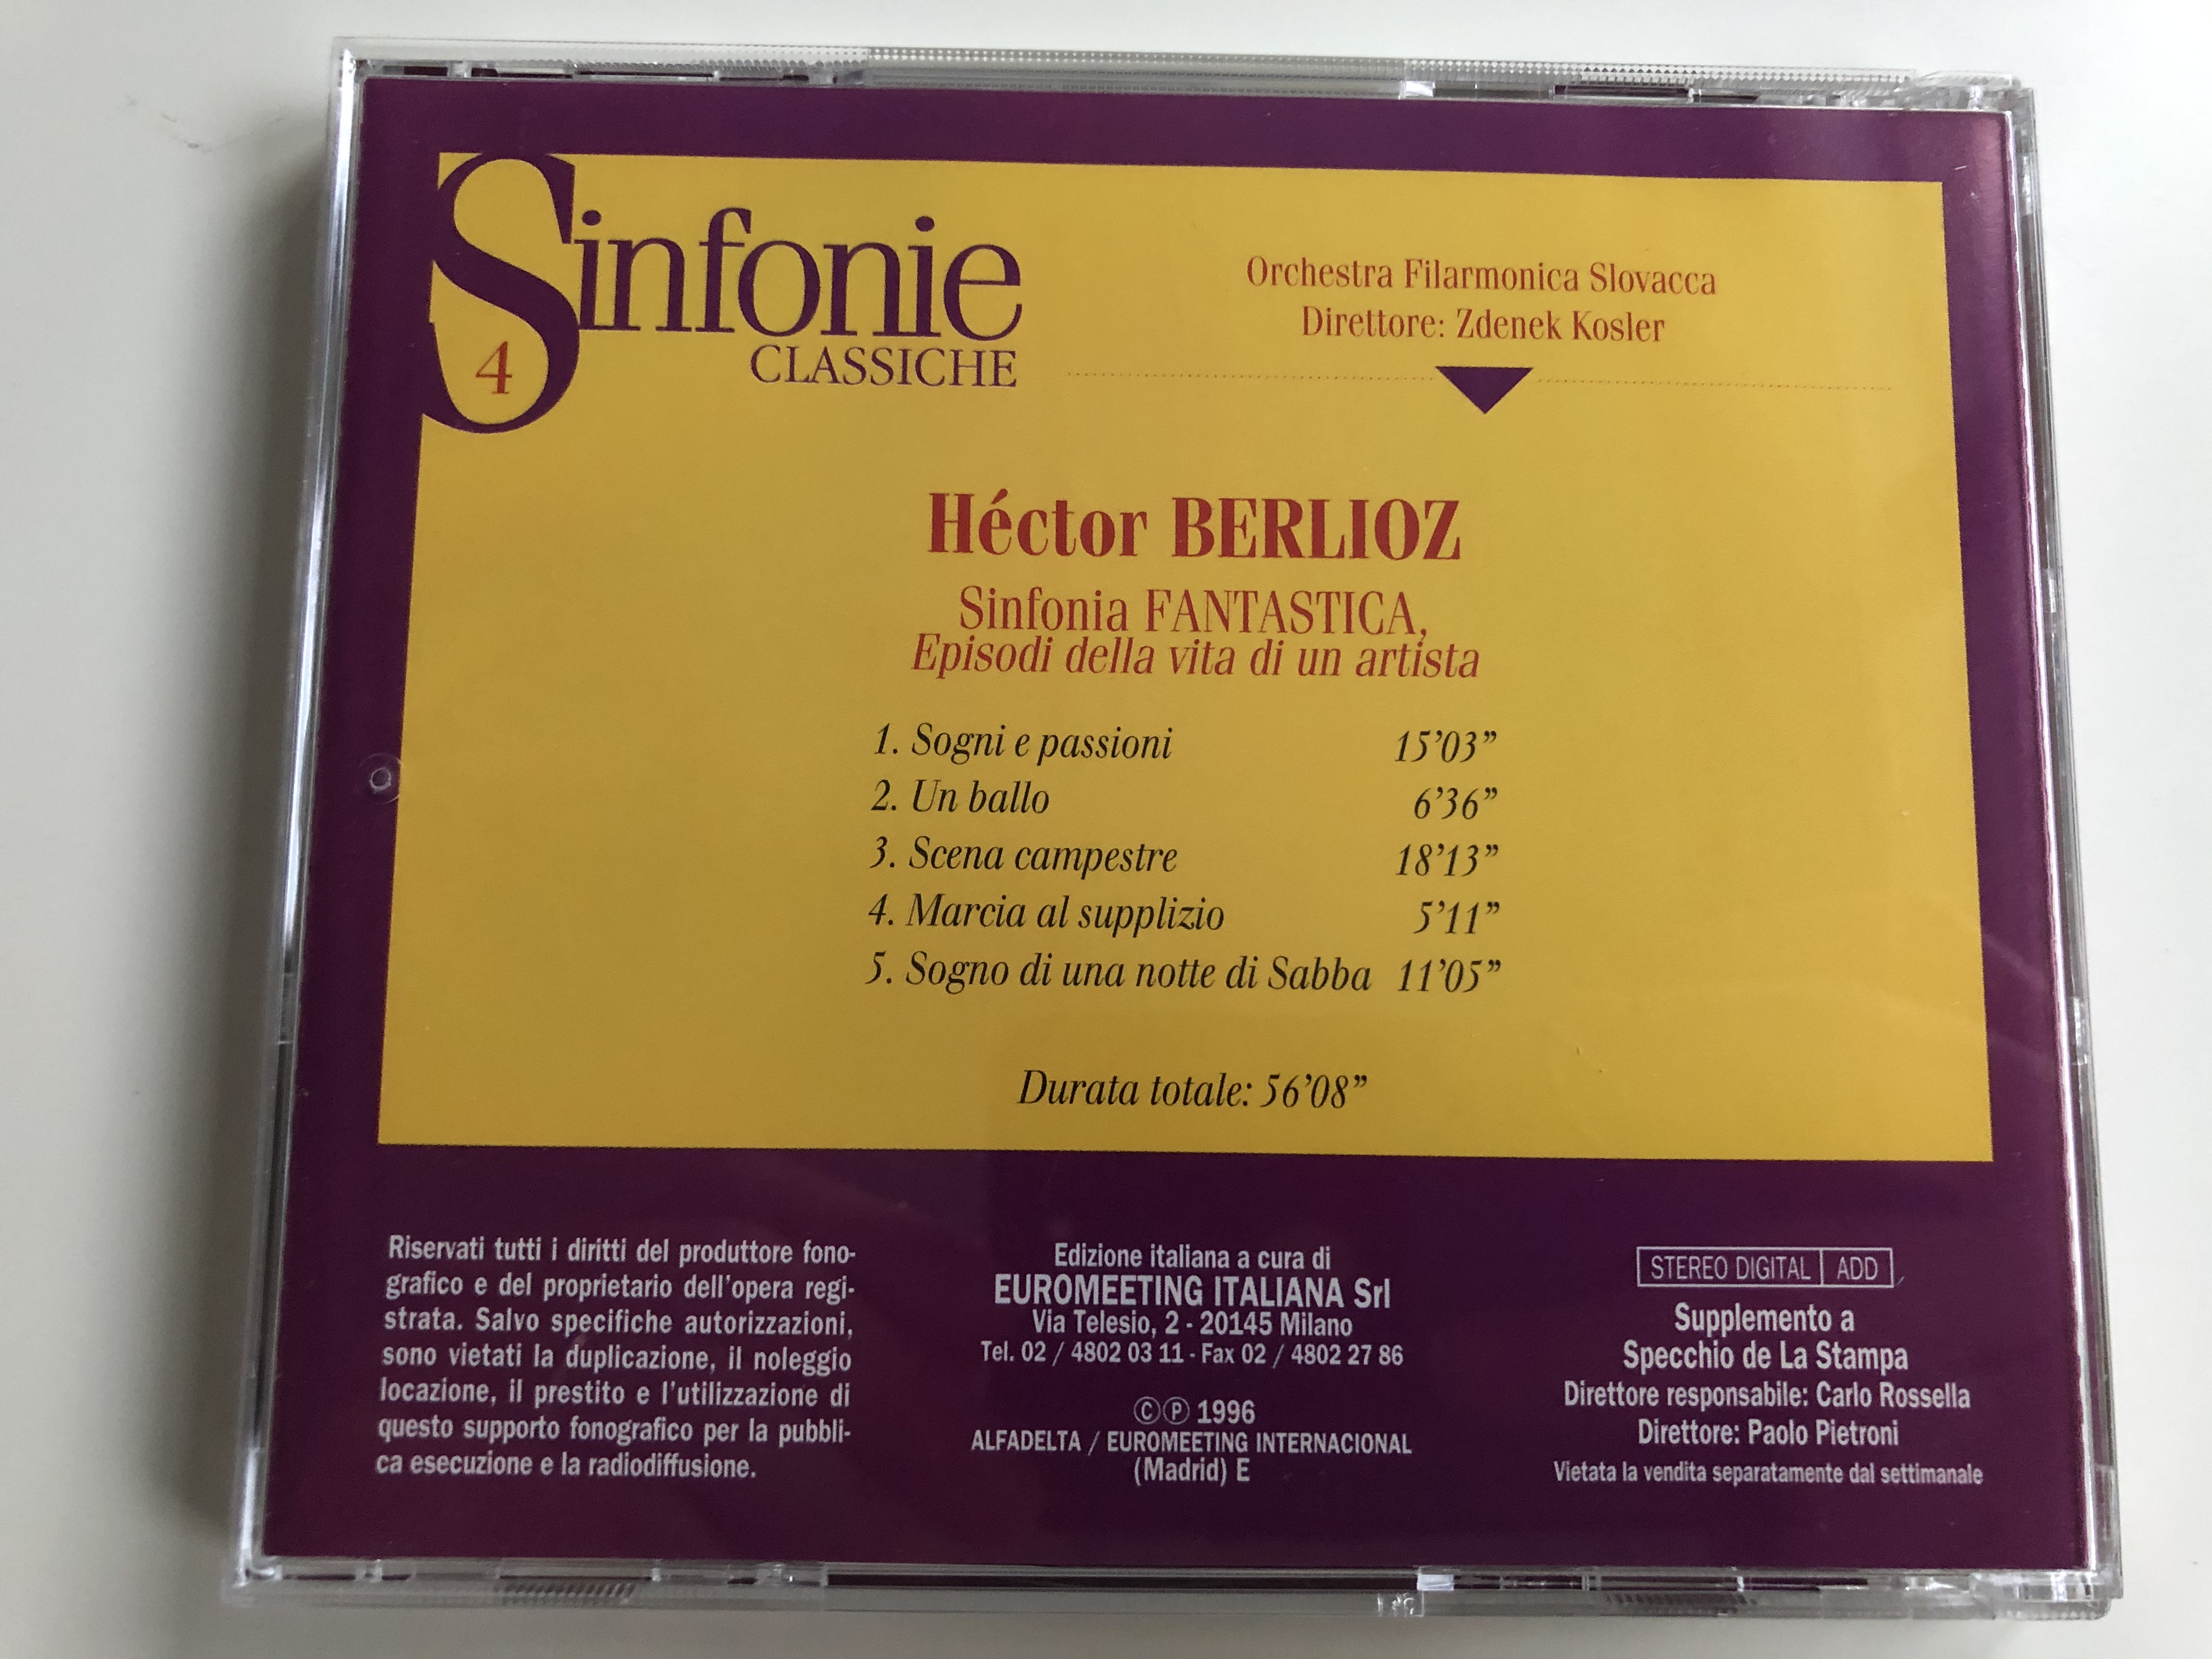 sinfonie-classiche-4-berlioz-sinfonia-fantastica-episodi-della-vita-di-un-artista-orchestra-filarmonica-slovacca-zdenek-kosler-specchio-della-stampa-audio-cd-1996-stereo-i-0696075-1-6-.jpg